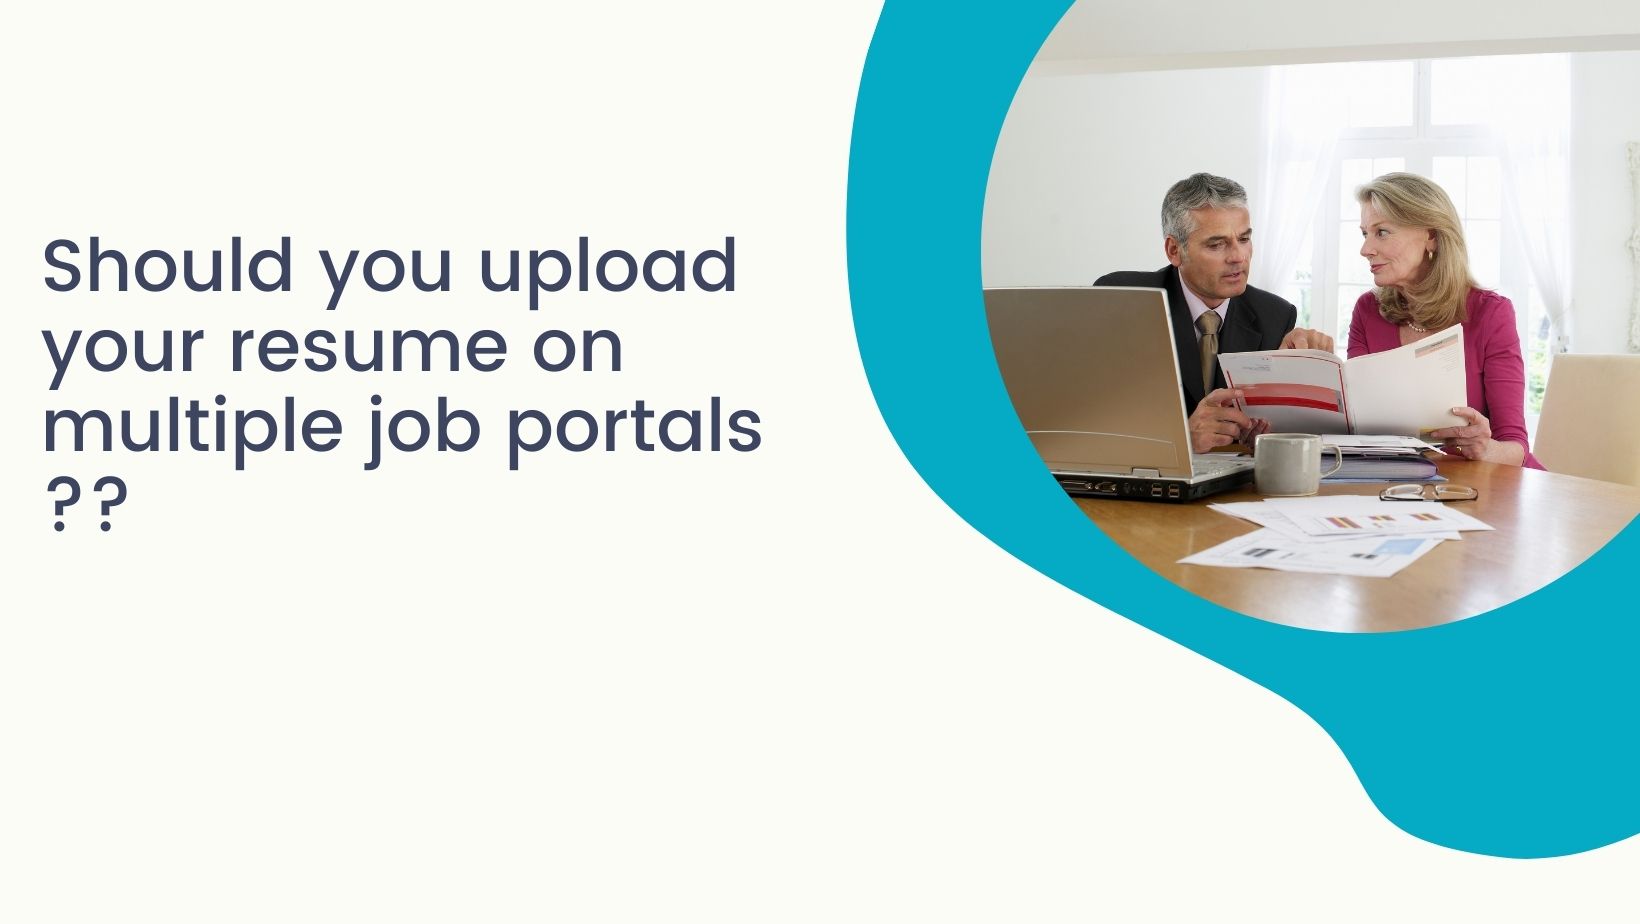 Upload_resumes_on_multiple_job_portals1.jpg